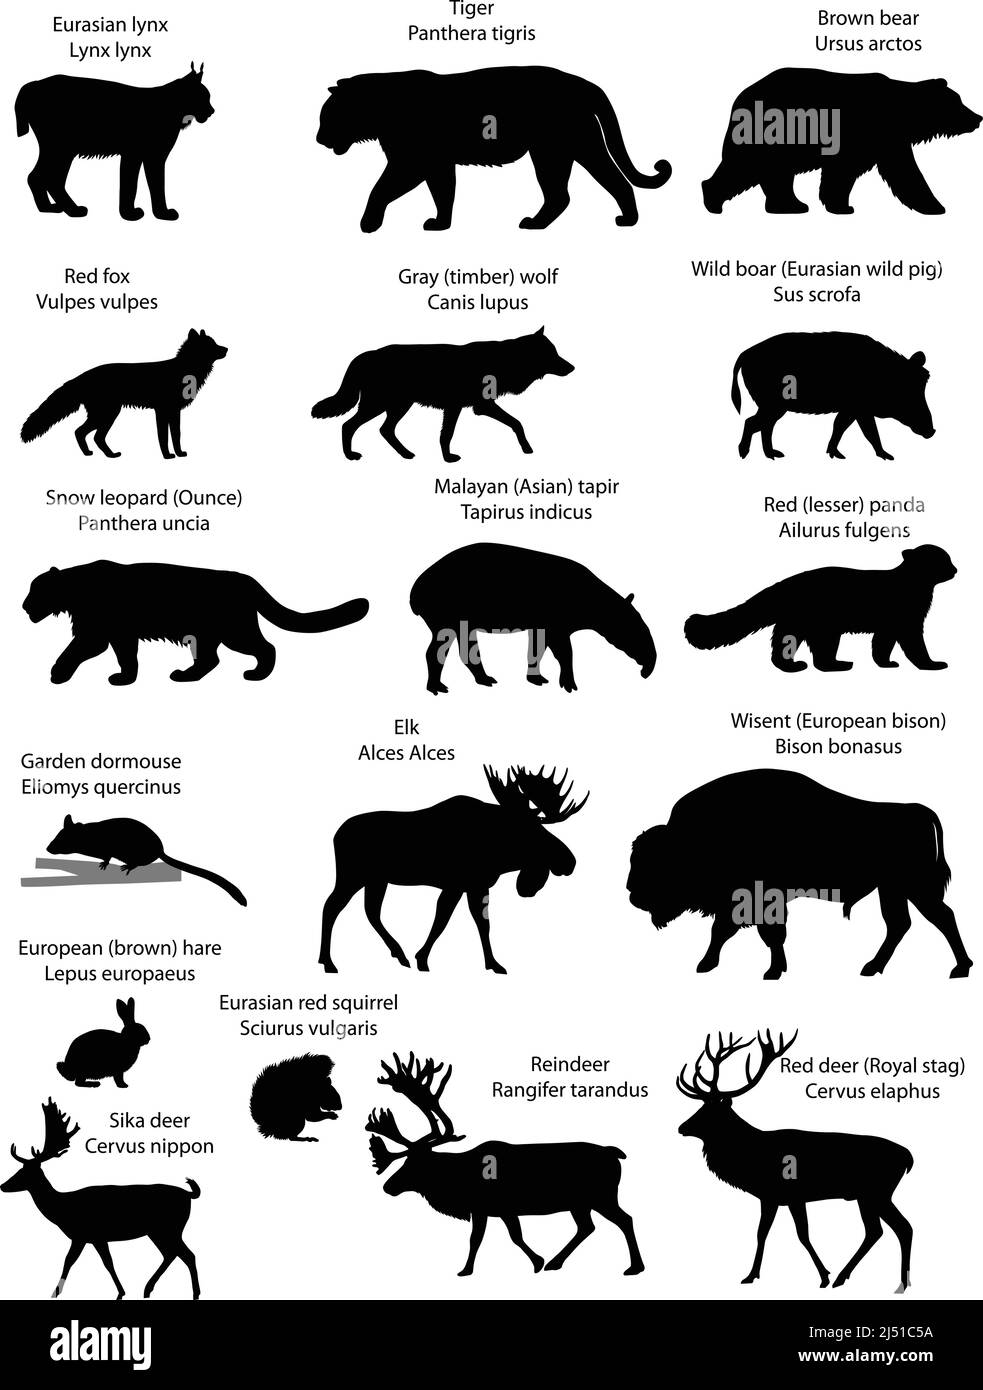 Collezione di sagome di animali che vivono nel territorio dell'Eurasia: lynx, tigre, orso, volpe, lupo, scoiattolo, lepre, alci, cervi, wisent, leopardo di neve Illustrazione Vettoriale